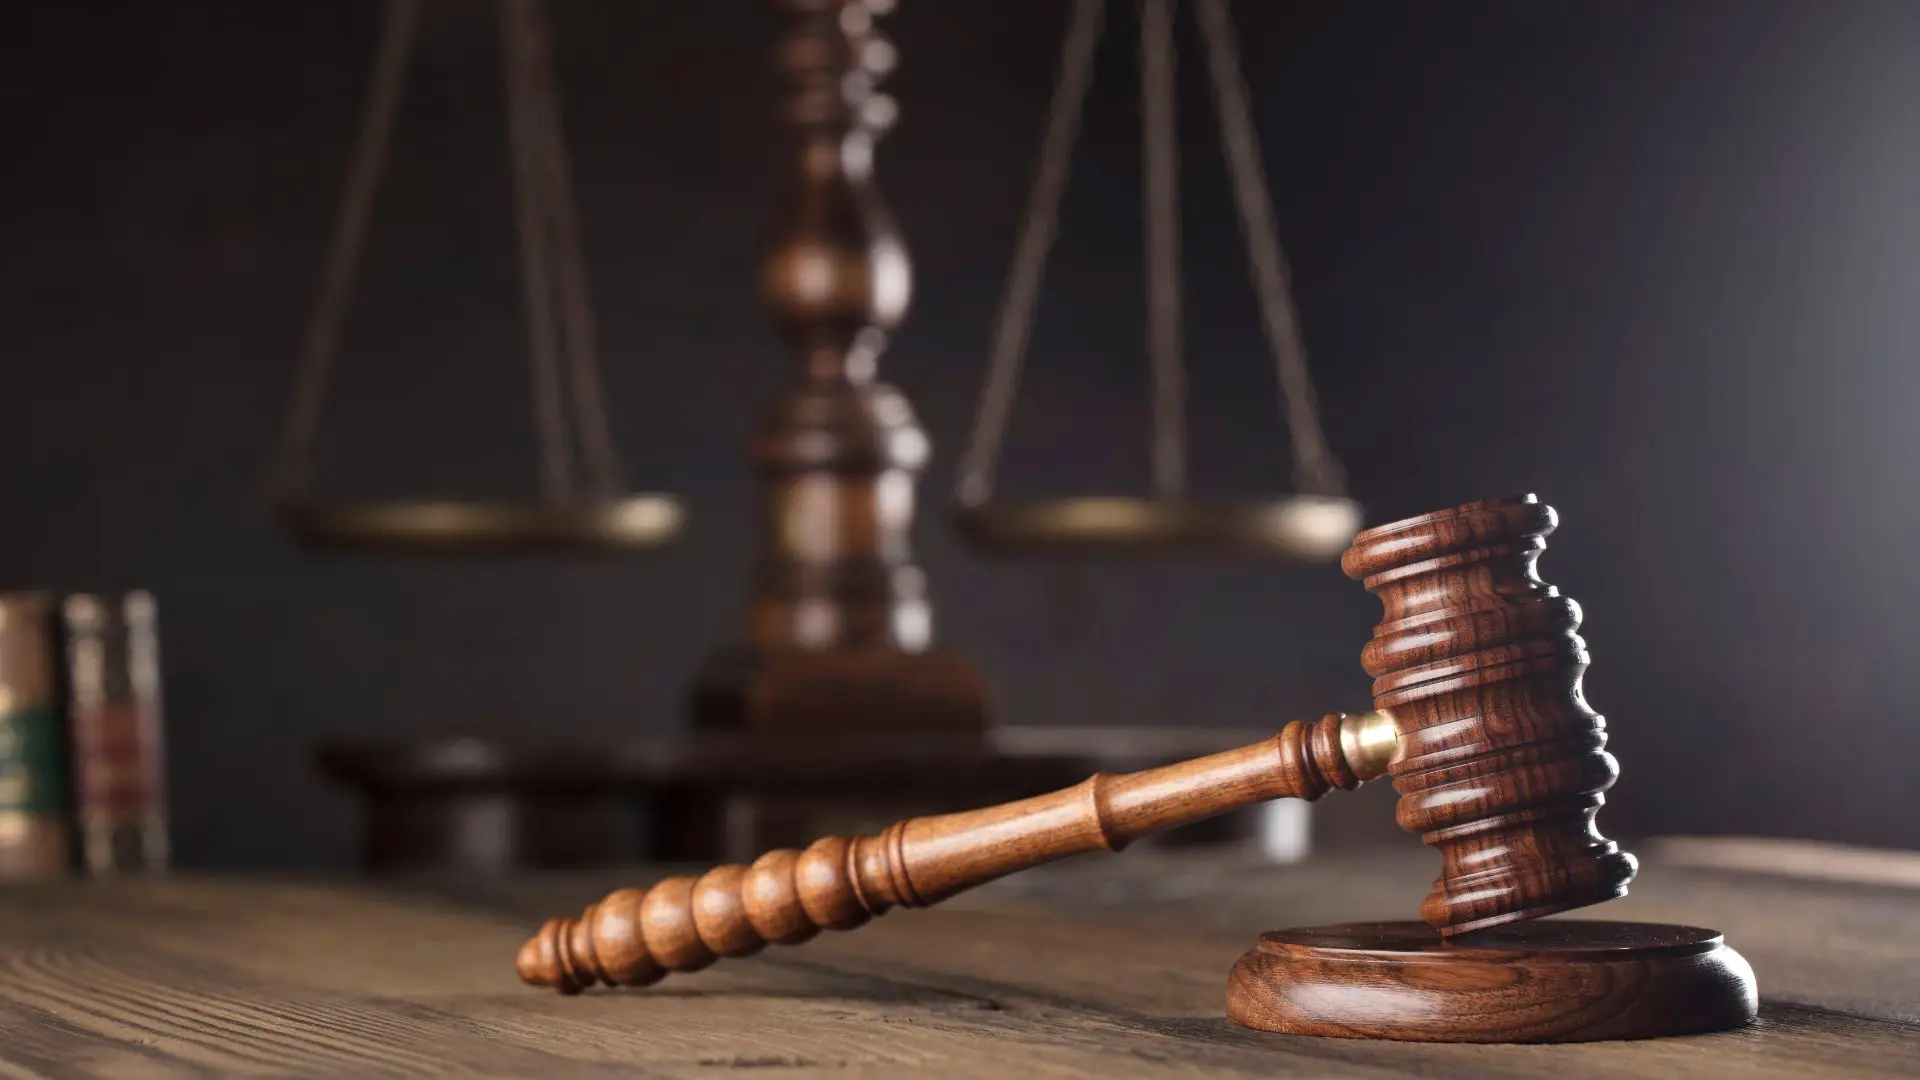 Nova bastonária dos advogados promete "luta e rigor para trazer a advocacia" ao século XXI